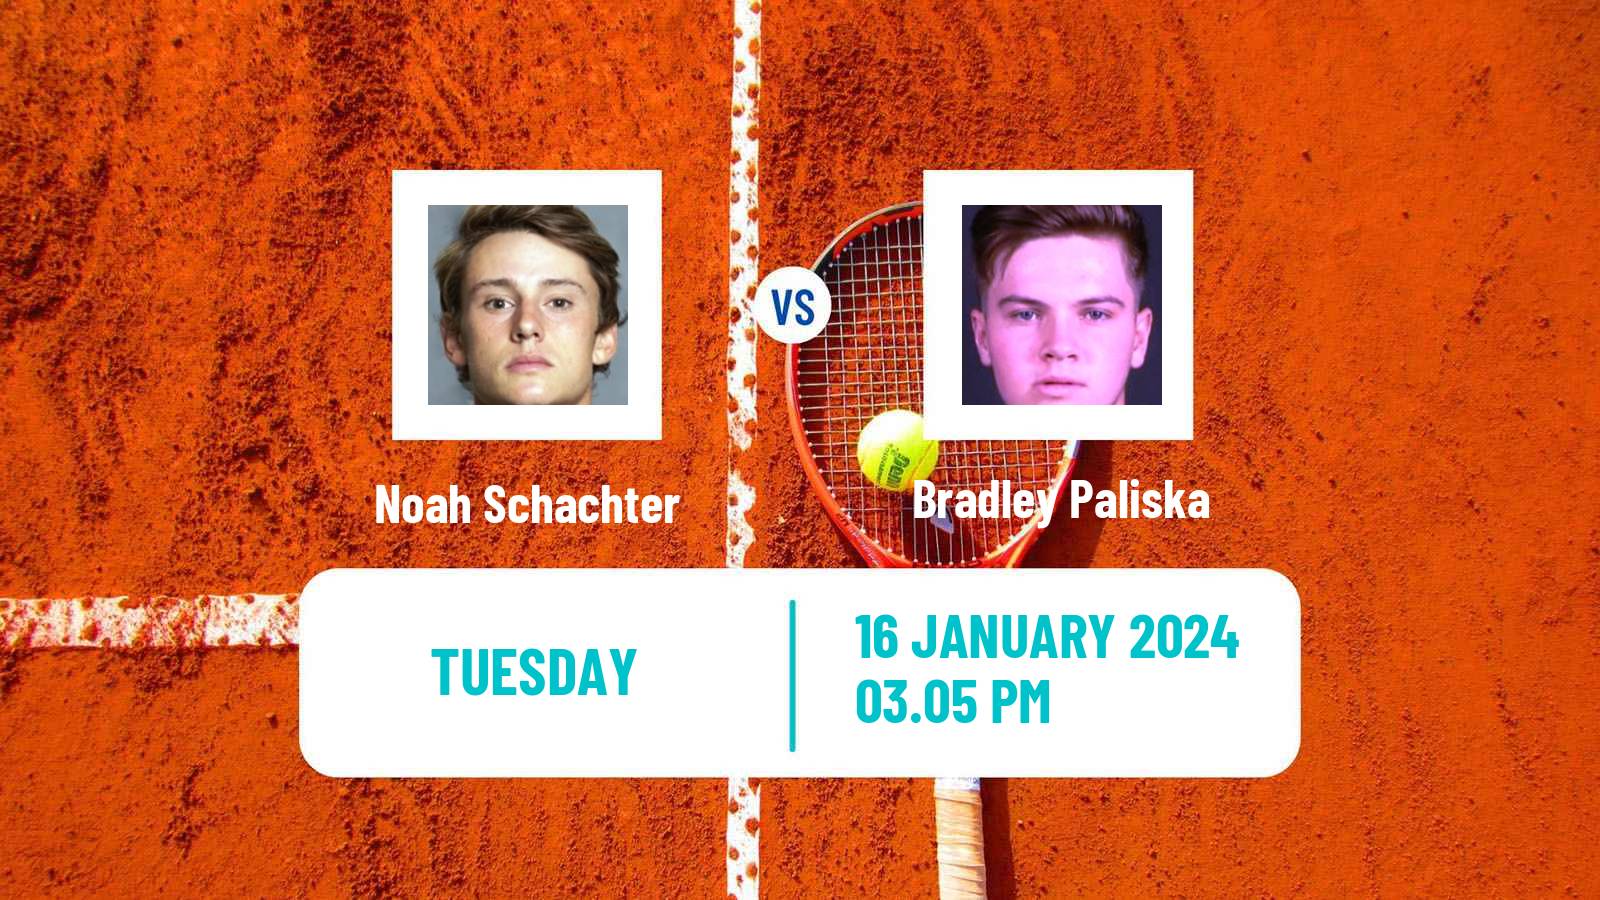 Tennis ITF M25 Ithaca Ny Men 2024 Noah Schachter - Bradley Paliska